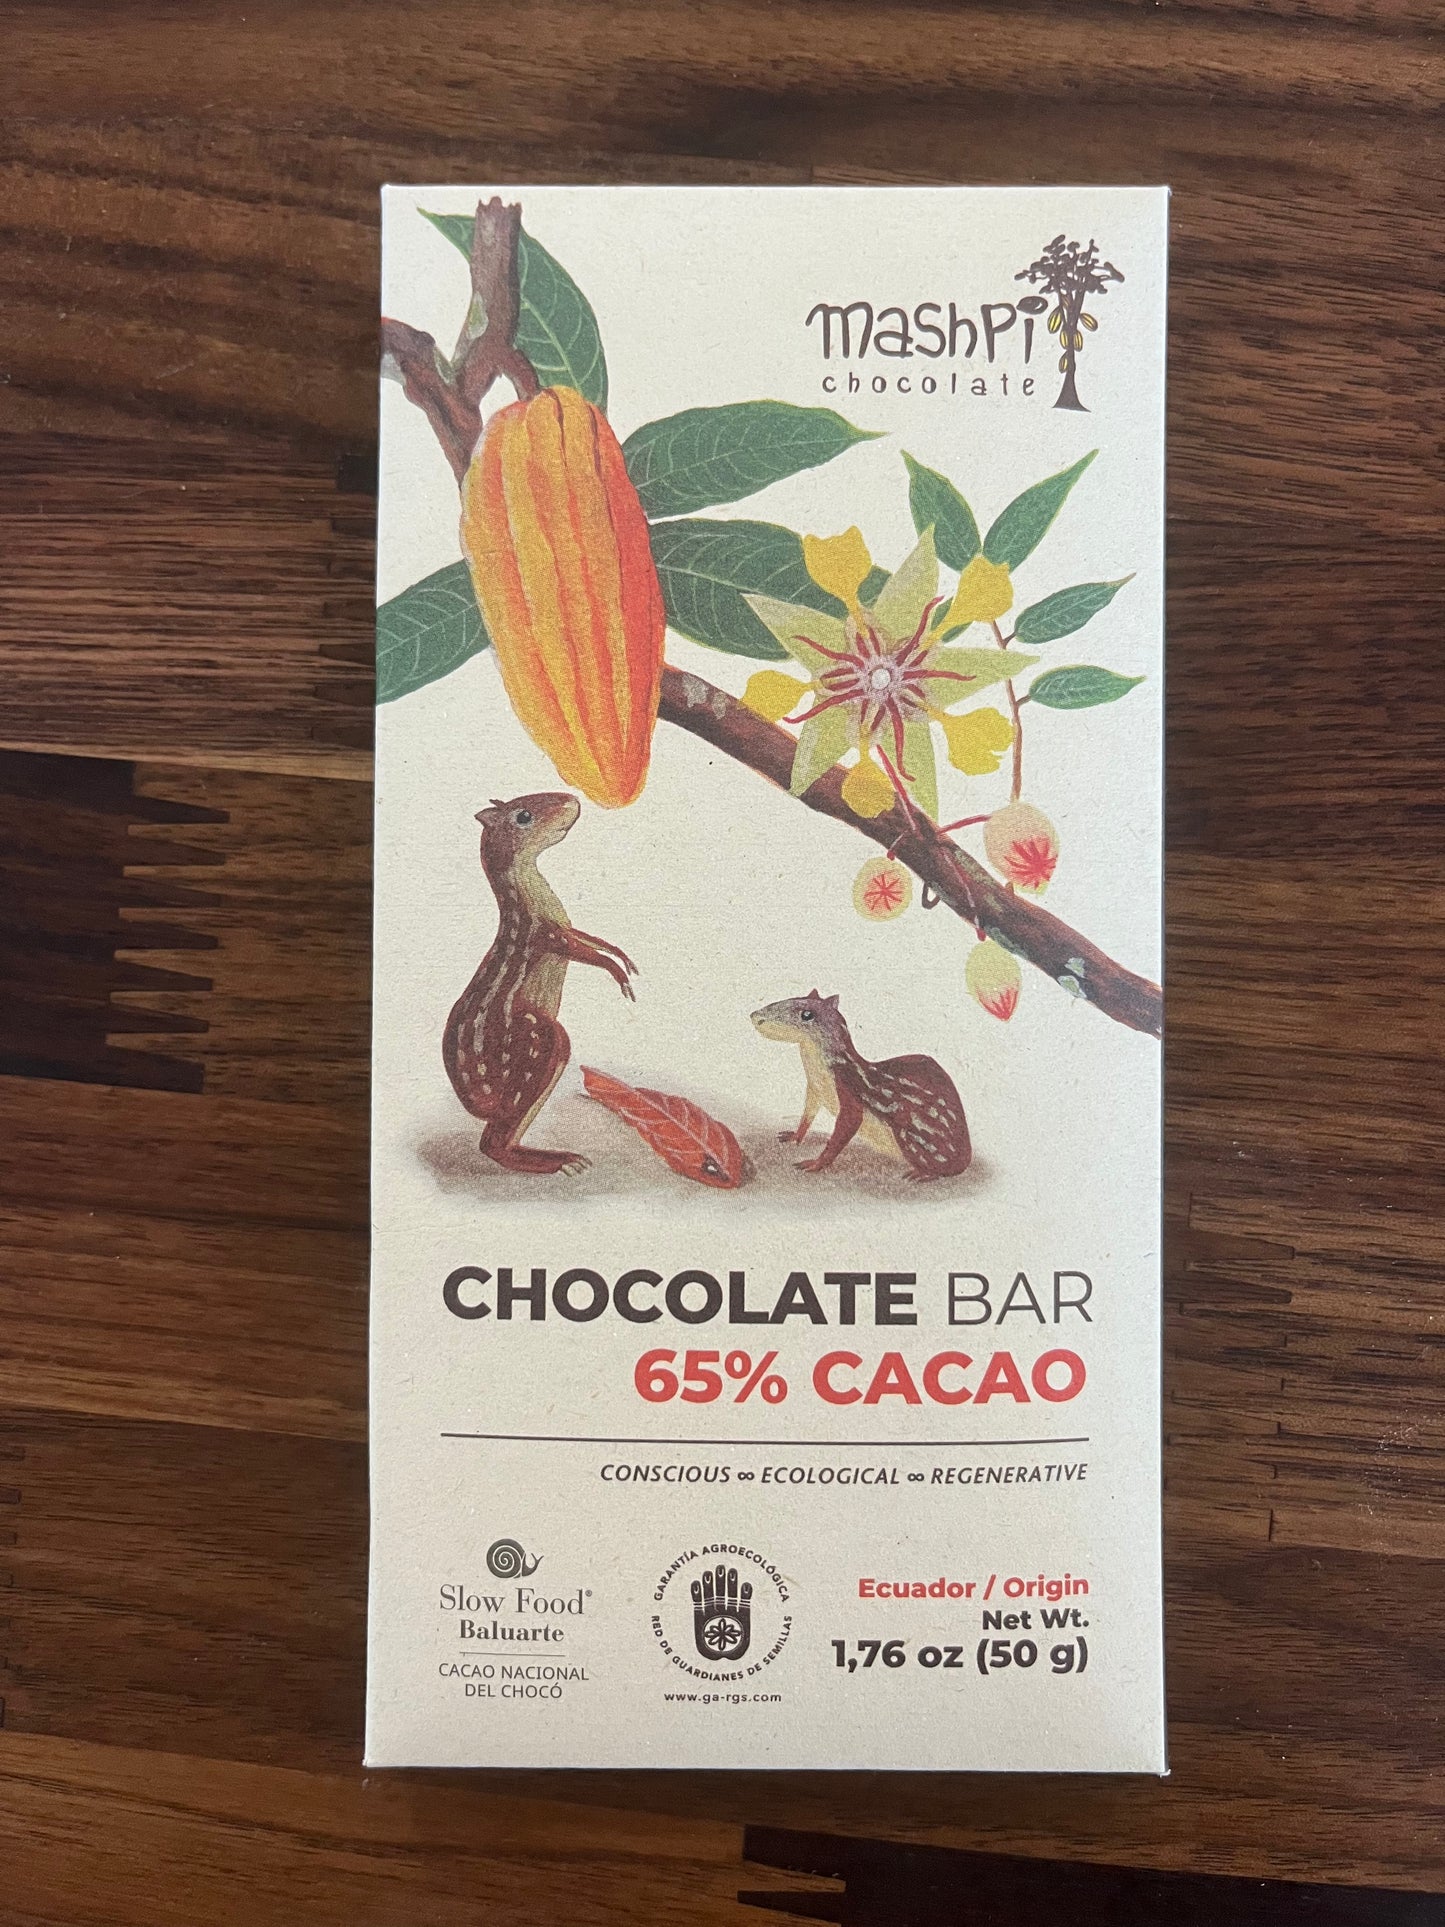 Mashpi 65% dark chocolate, Ecuador